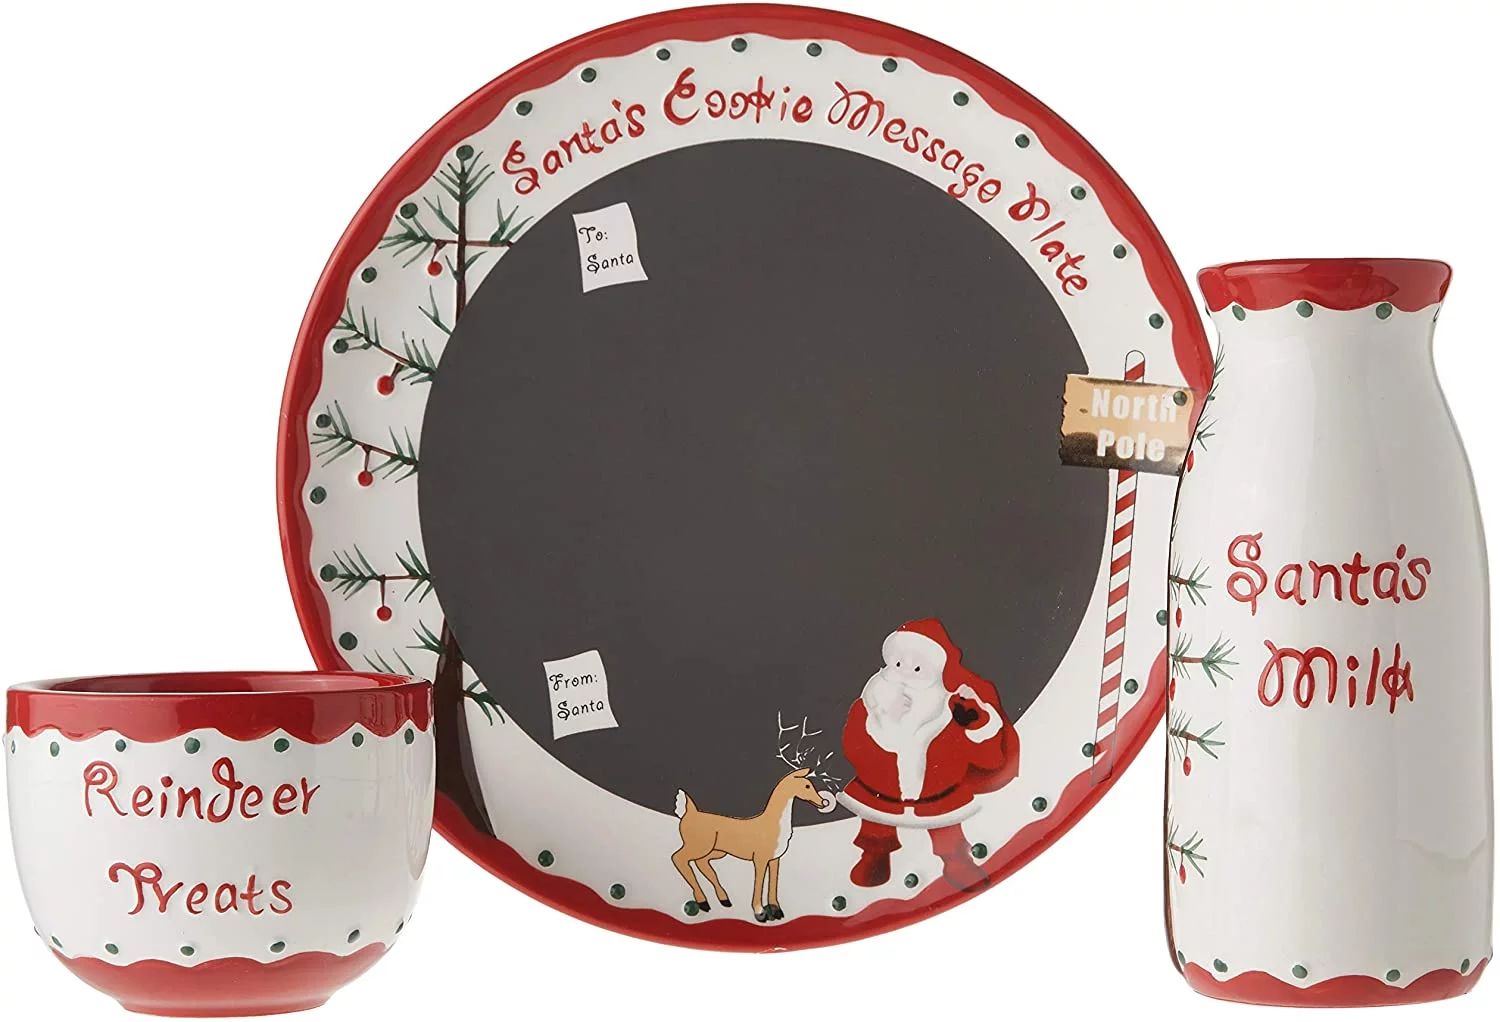 Child to Cherish Santa's Message Plate Set, Santa Cookie Plate, Santa Milk jar, and Reindeer Trea... | Walmart (US)